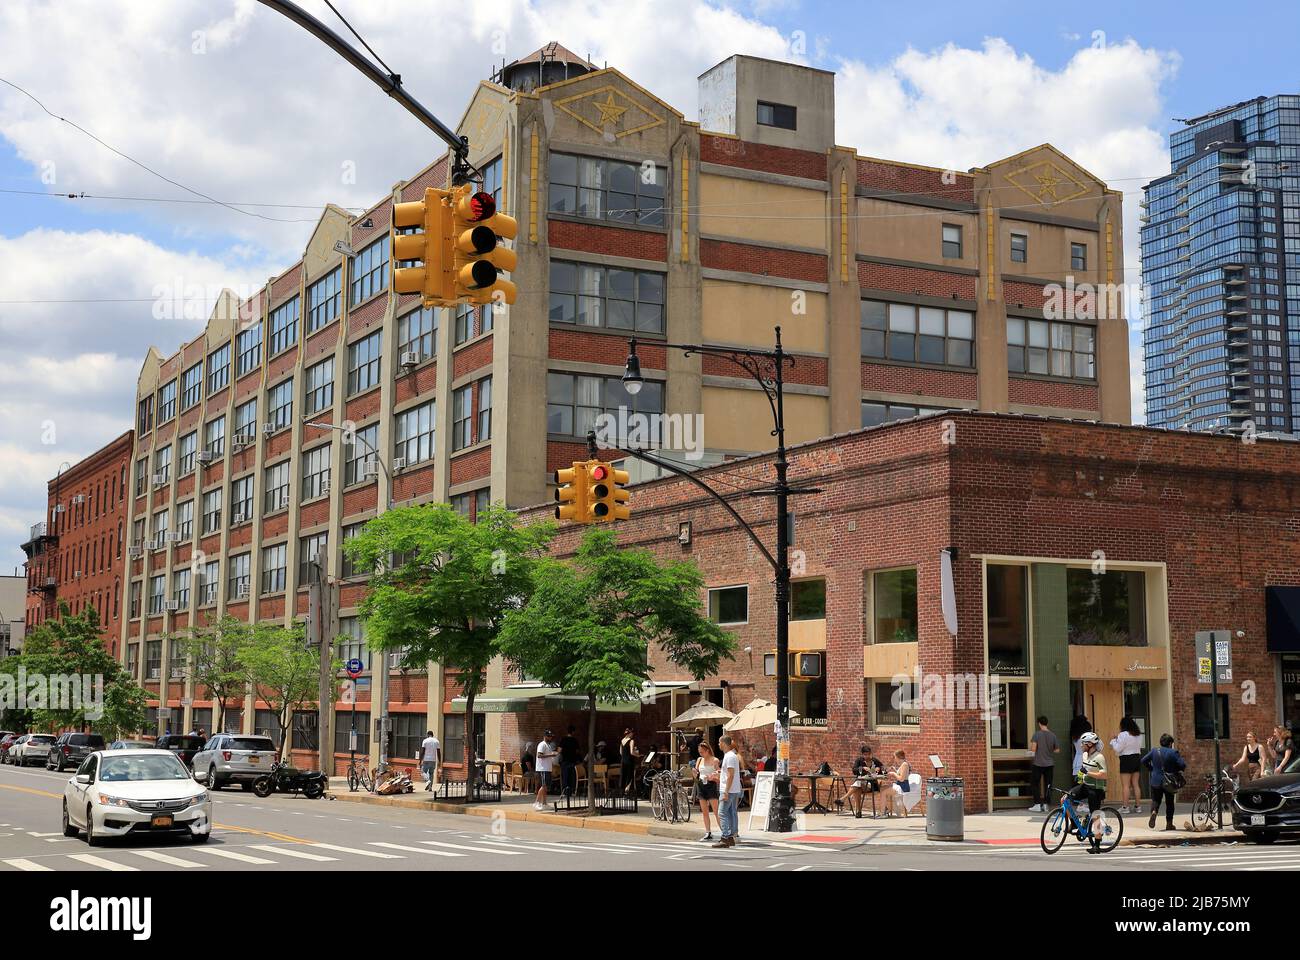 Les condominiums Pencil Factory sont situés dans l'ancien bâtiment de l'usine Eberhard Faber Pencil Company le long de Greenpoint Avenue.Greenpoint.Brooklyn.New York City.USA Banque D'Images